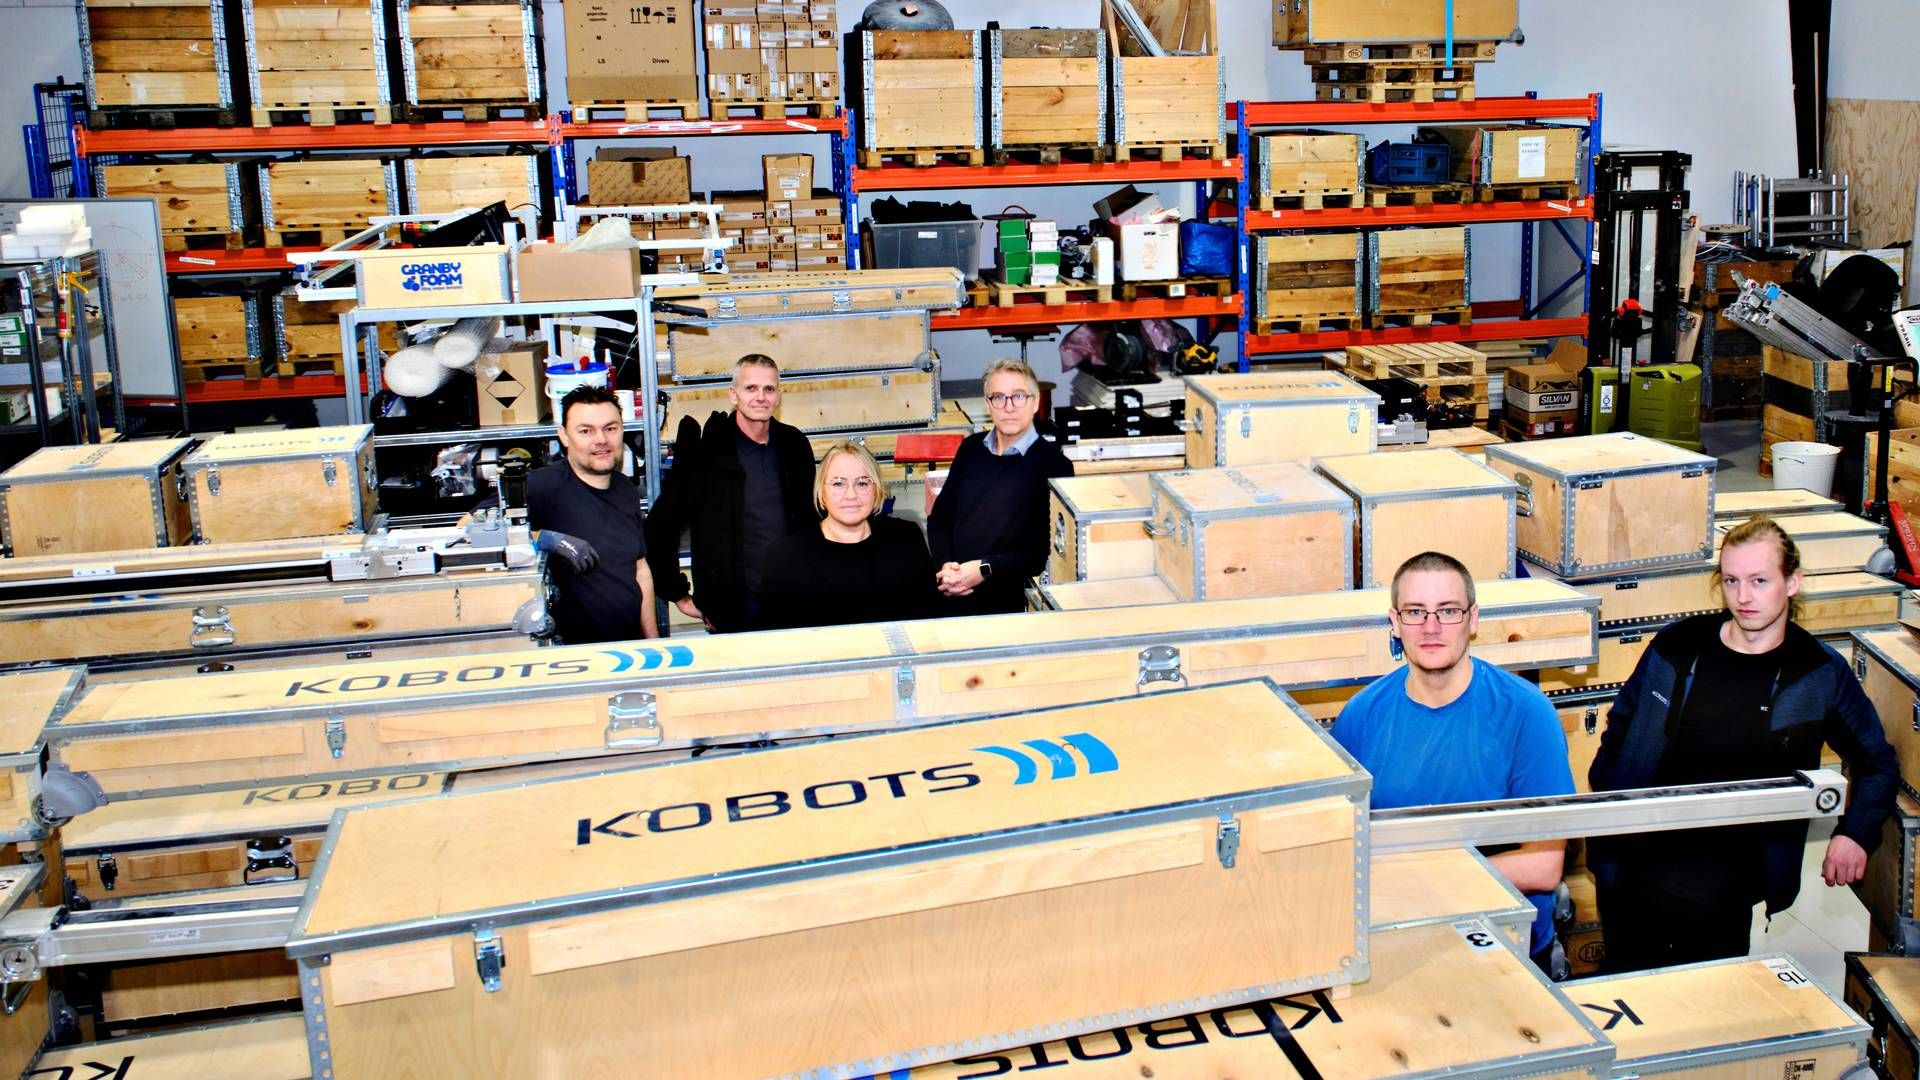 Seks ud af Kobots 10 nuværende medarbejdere samlet sammen med et hav af robotter, som var på vej til USA. | Foto: Magnus Møller